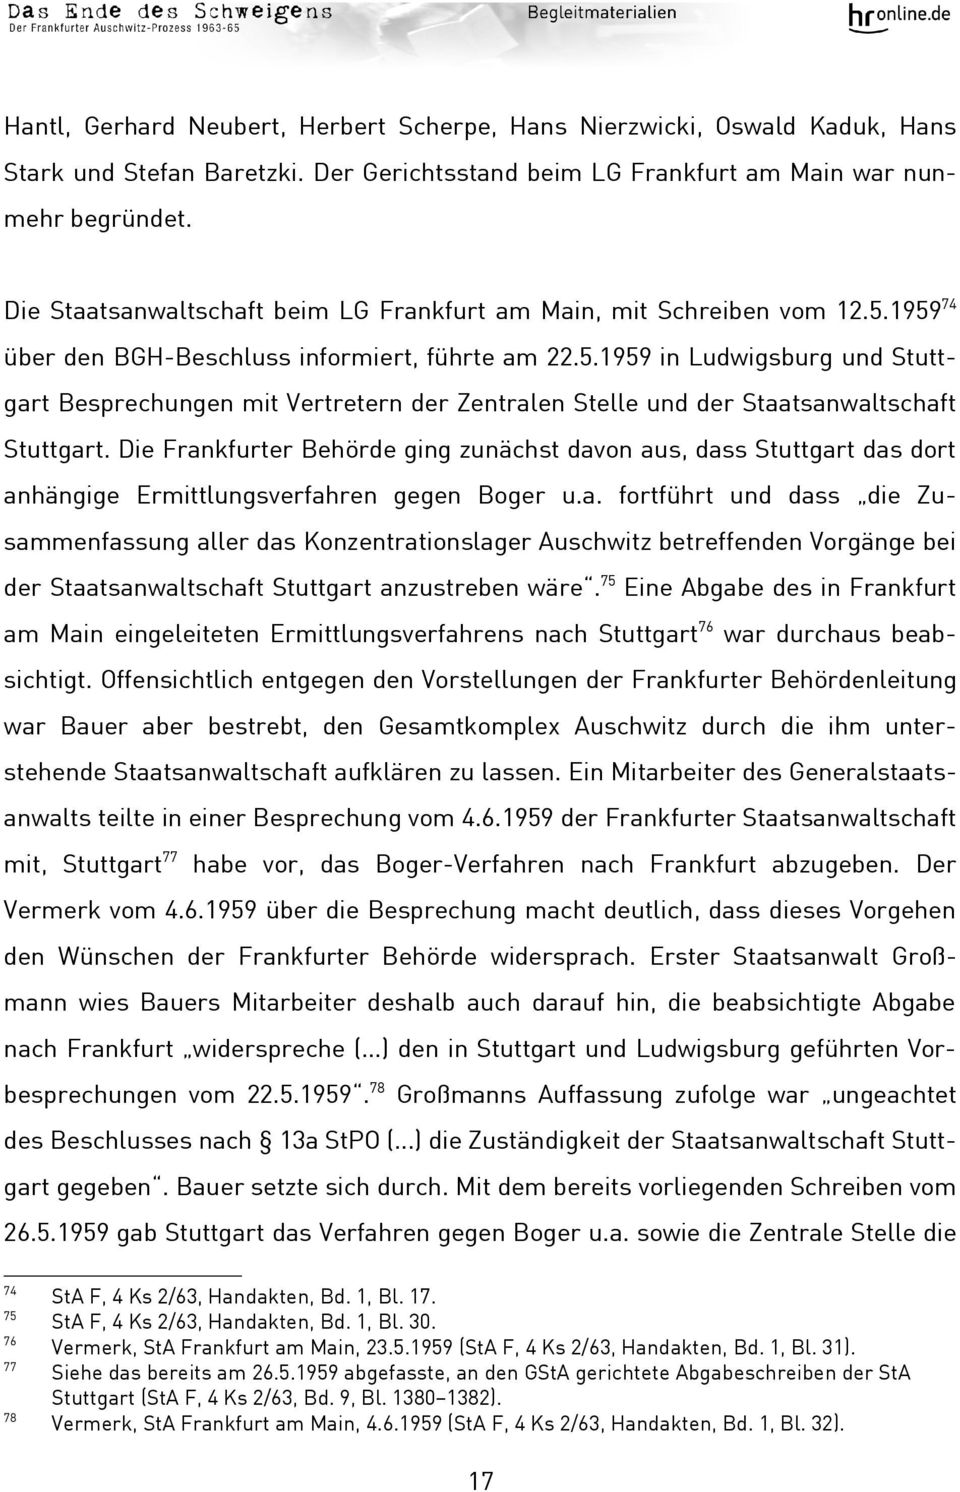 Die Frankfurter Behörde ging zunächst davon aus, dass Stuttgart das dort anhängige Ermittlungsverfahren gegen Boger u.a. fortführt und dass die Zusammenfassung aller das Konzentrationslager Auschwitz betreffenden Vorgänge bei der Staatsanwaltschaft Stuttgart anzustreben wäre.